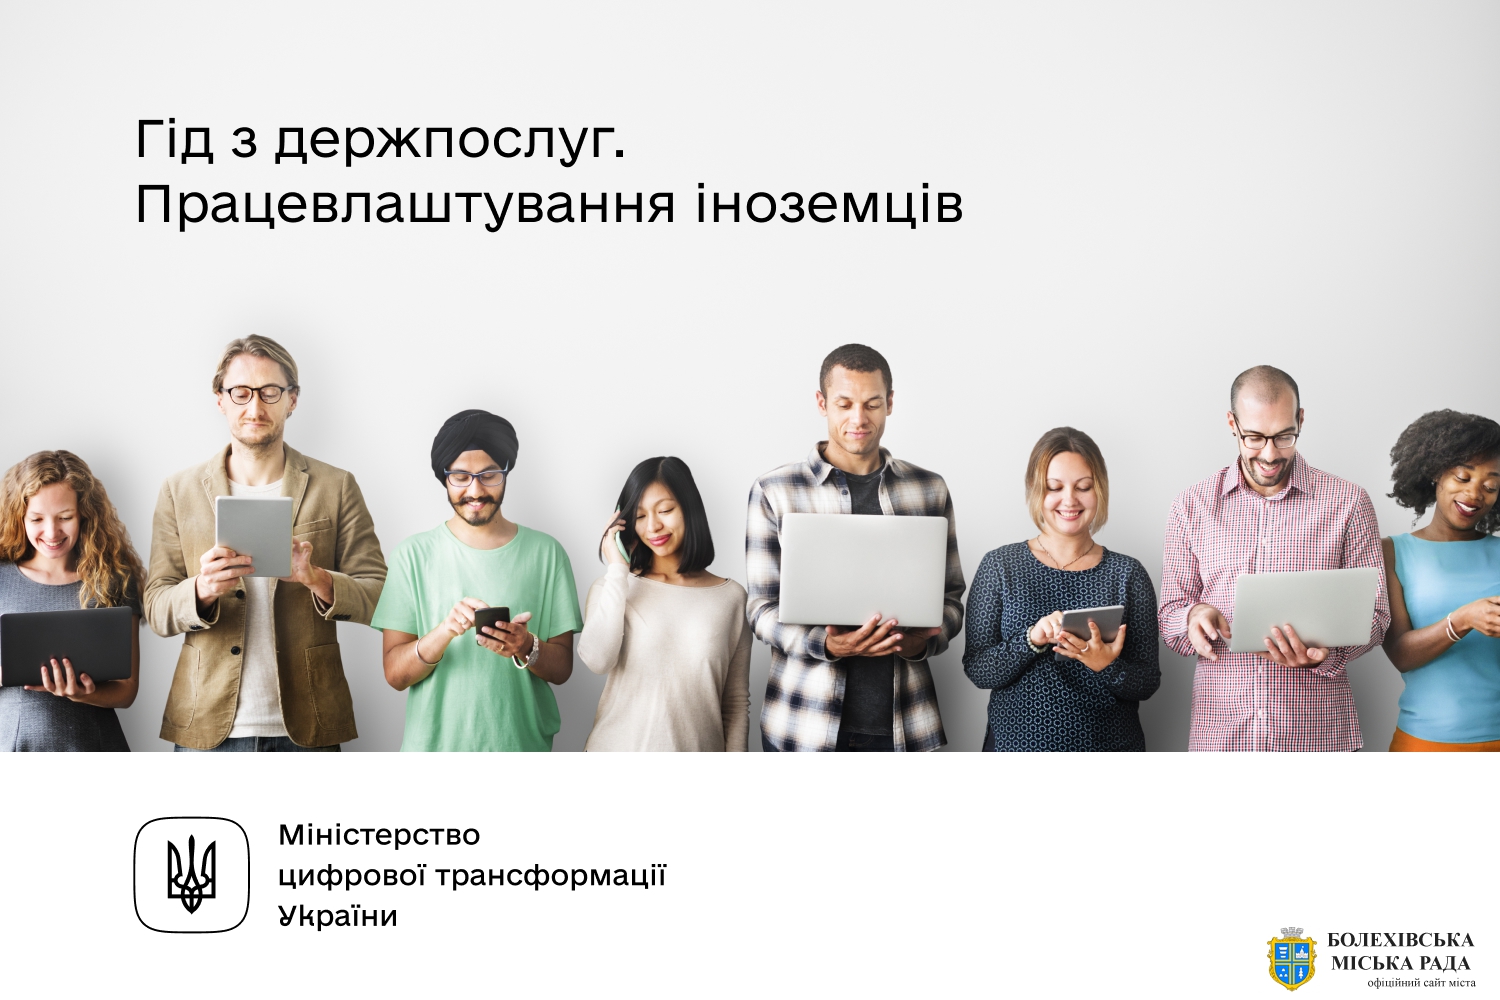 Для тих, хто бажає працювати в Україні, — інформує Гід з держпослуг